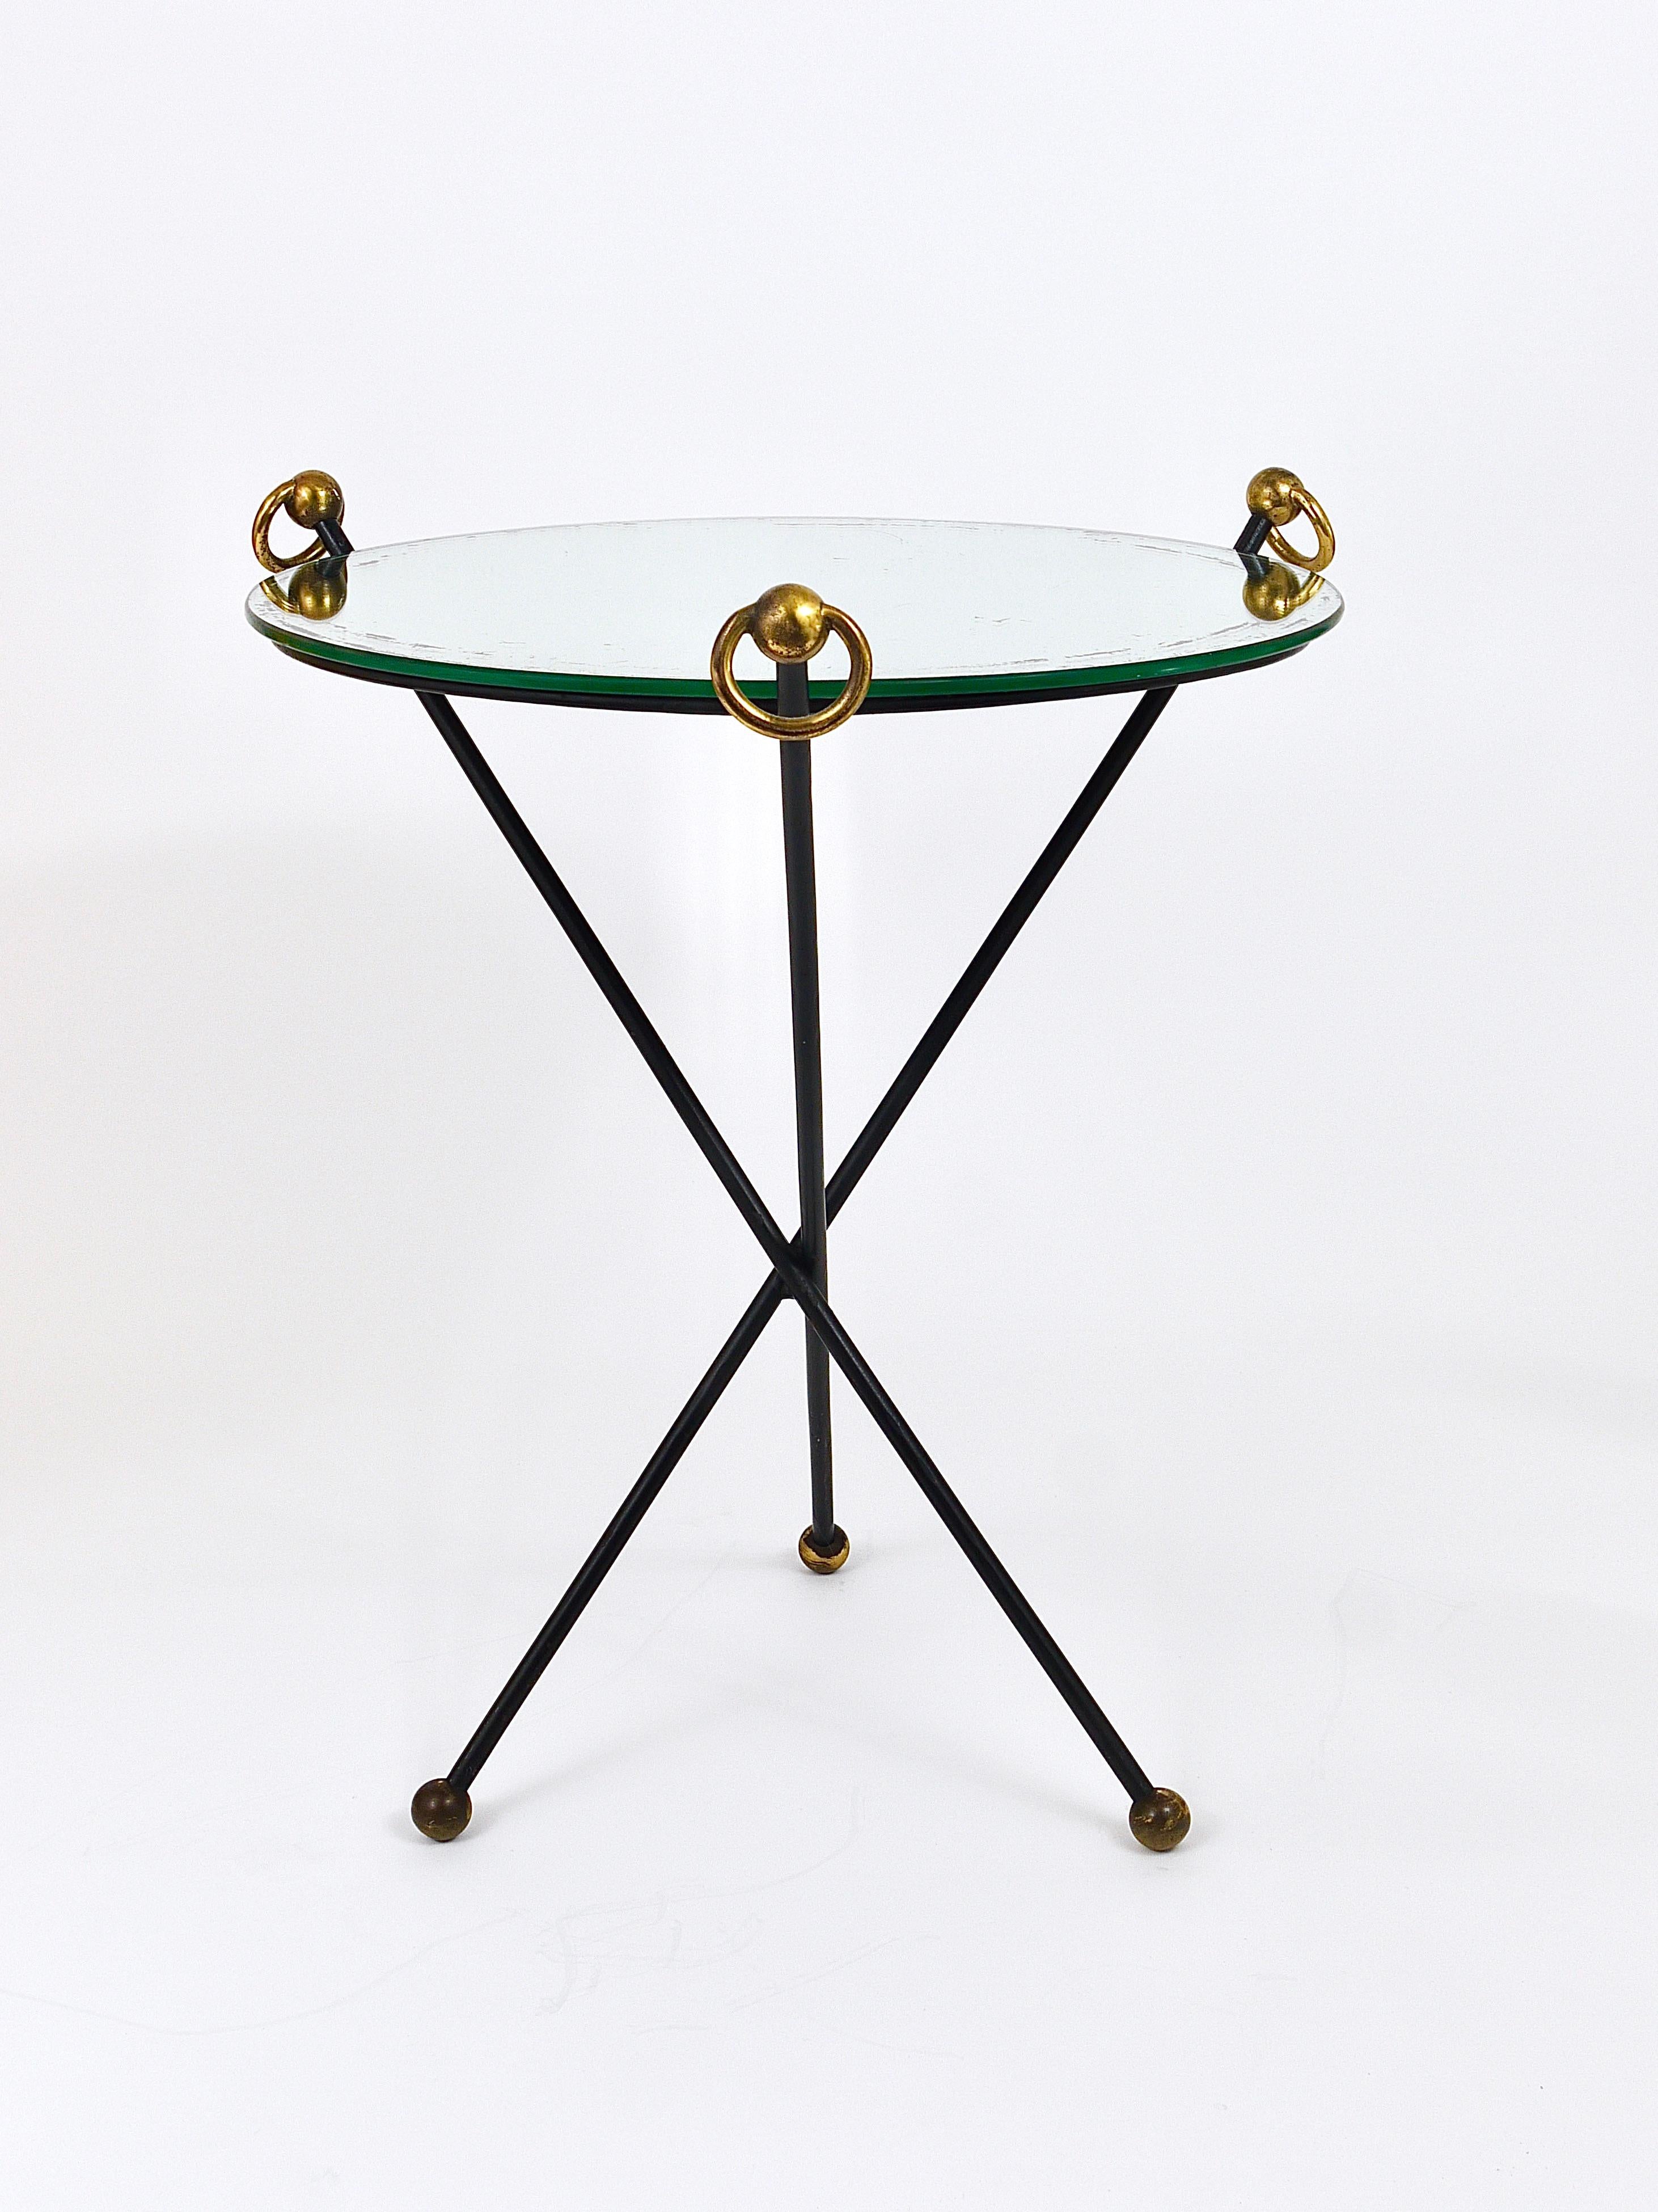 Une jolie et élégante petite table d'appoint ou table basse / guerdon / piédestal néoclassique des années 1950, fabriquée à la main en France. Dans le style de Jacques Adnet. Elle se compose d'une base de table tripode classique en fer noir avec de